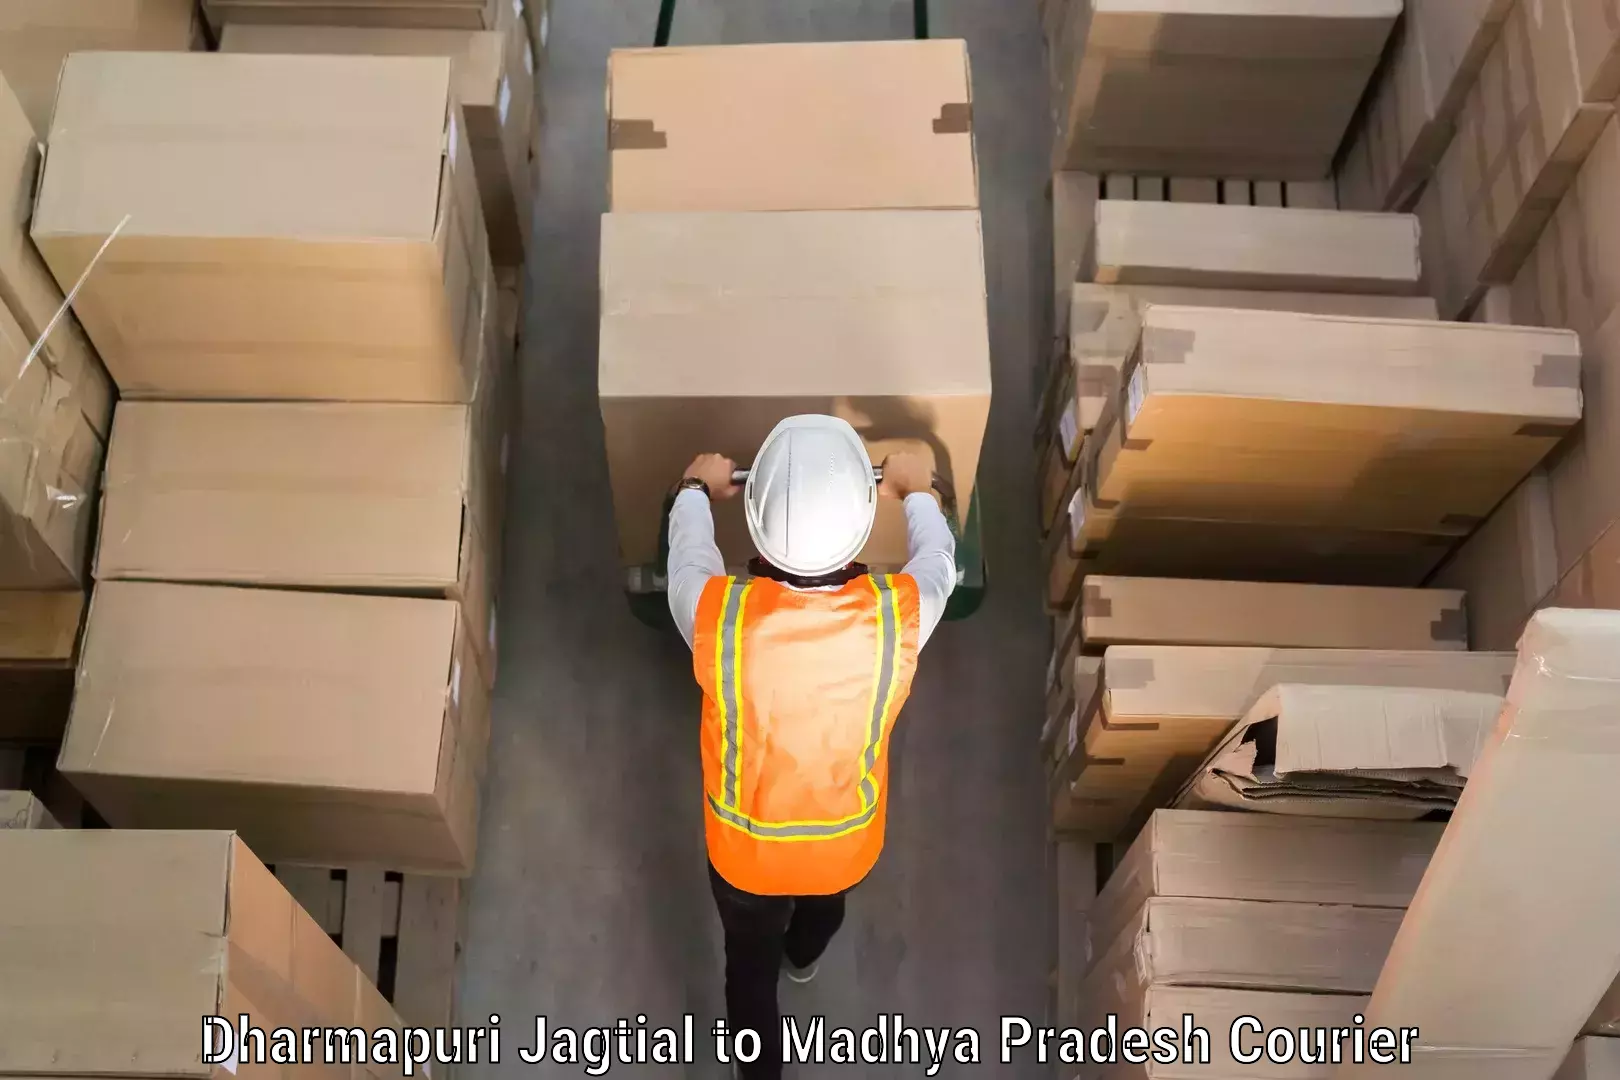 Luggage delivery network Dharmapuri Jagtial to Binaganj